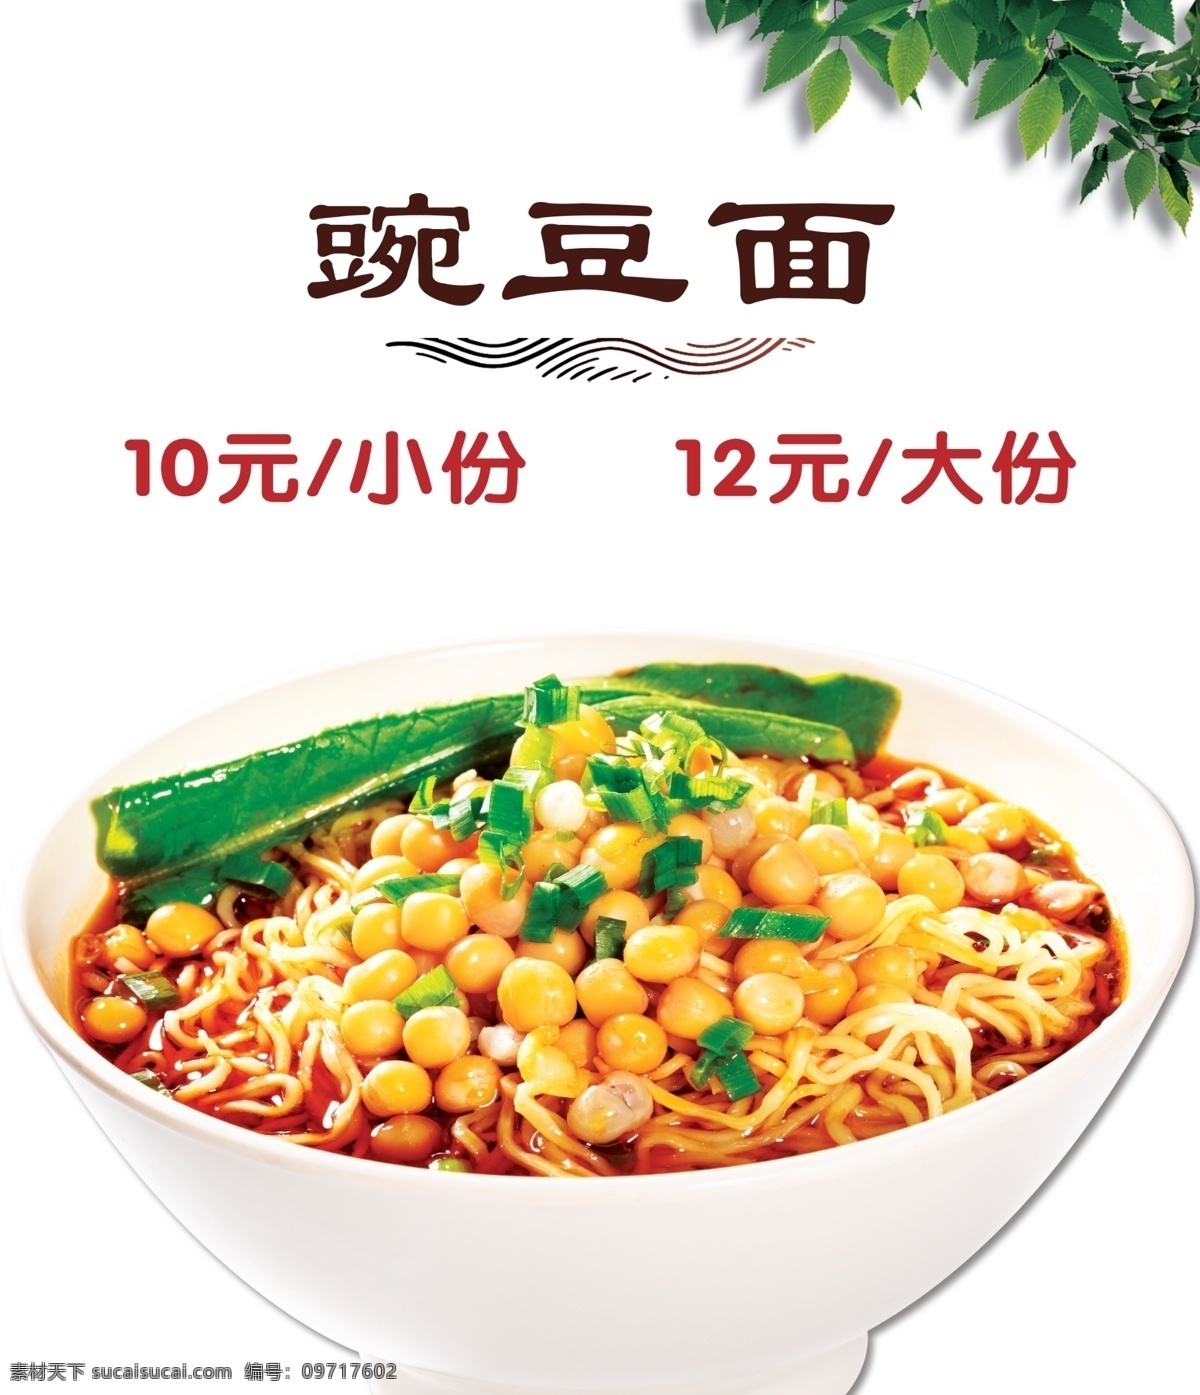 豌豆面 菜单 灯箱 美食 面食 海报 灯箱片 背景图 宣传单 美食超高清 分层